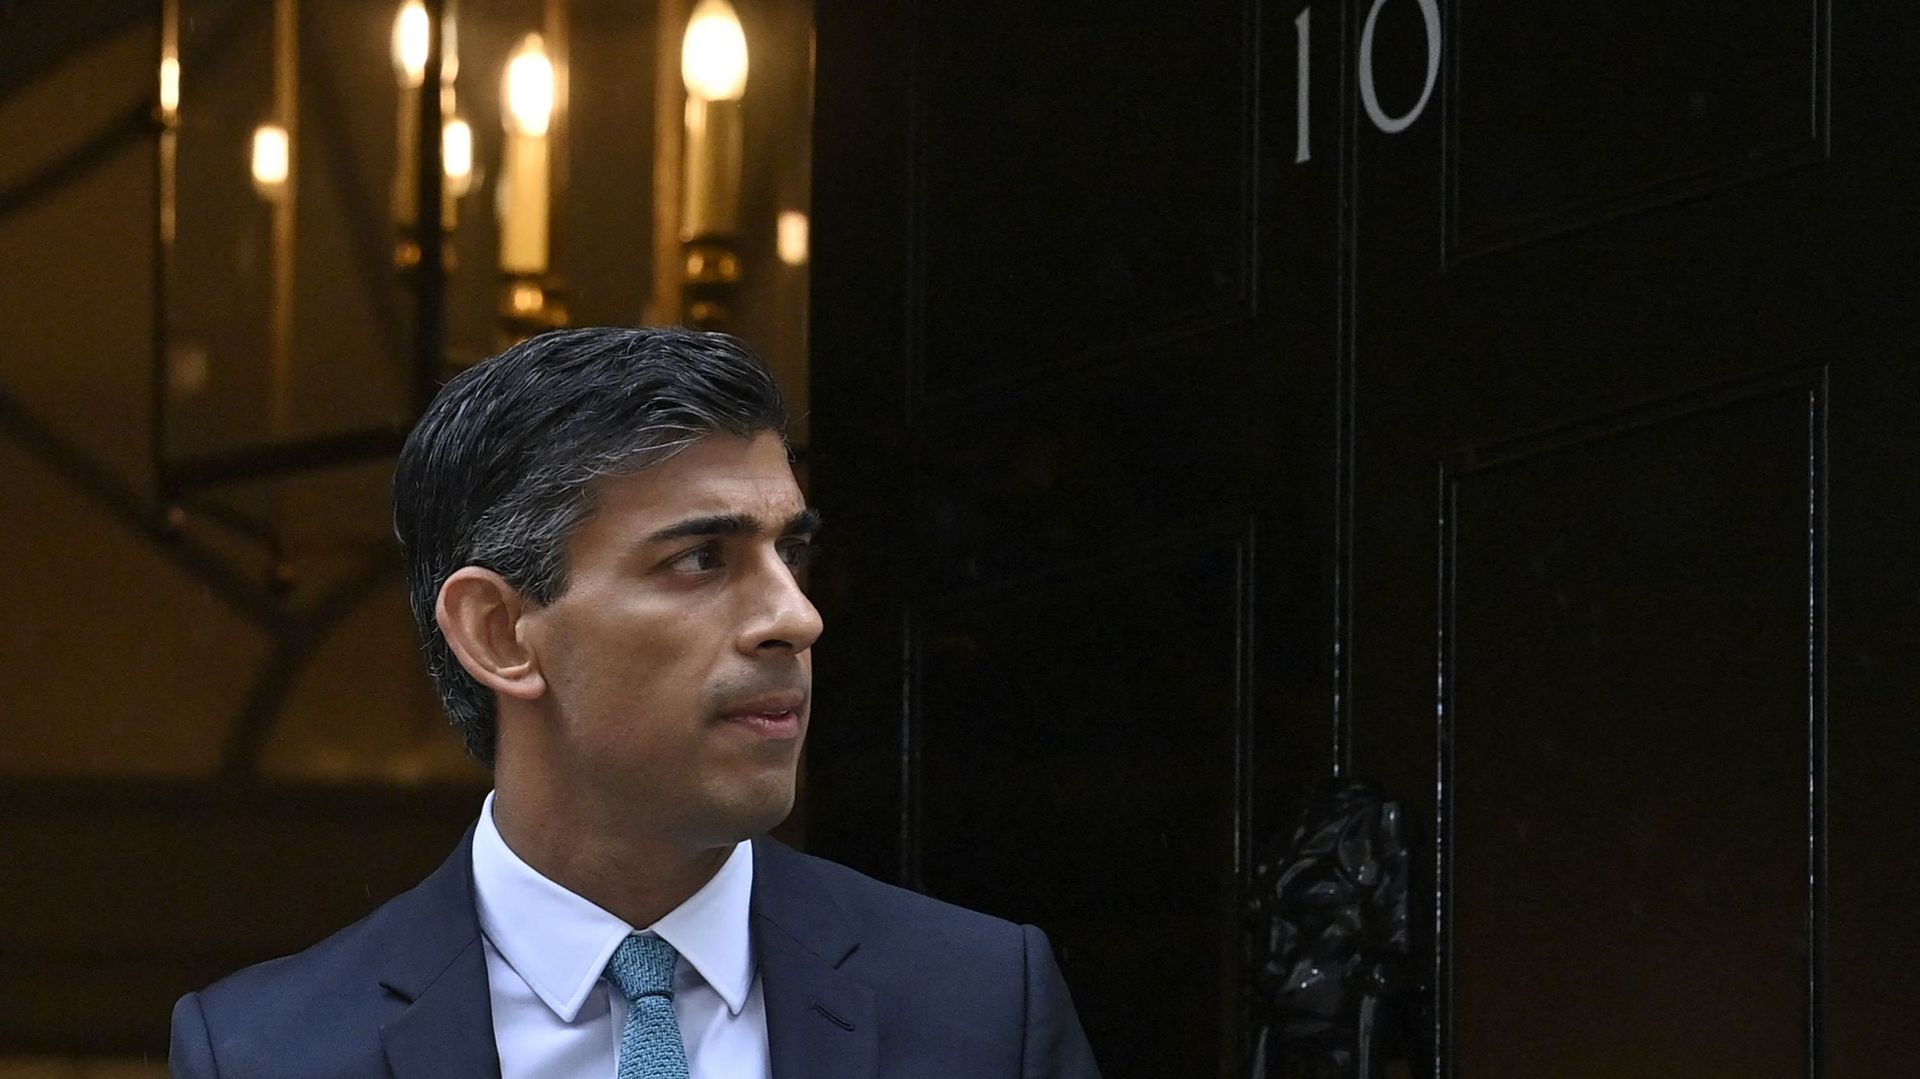 Le nouveau Premier ministre britannique Rishi Sunak quitte le 10 Downing Street, dans le centre de Londres, le 26 octobre 2022, pour se rendre à la Chambre des communes afin de participer à ses premières questions au Premier ministre. 